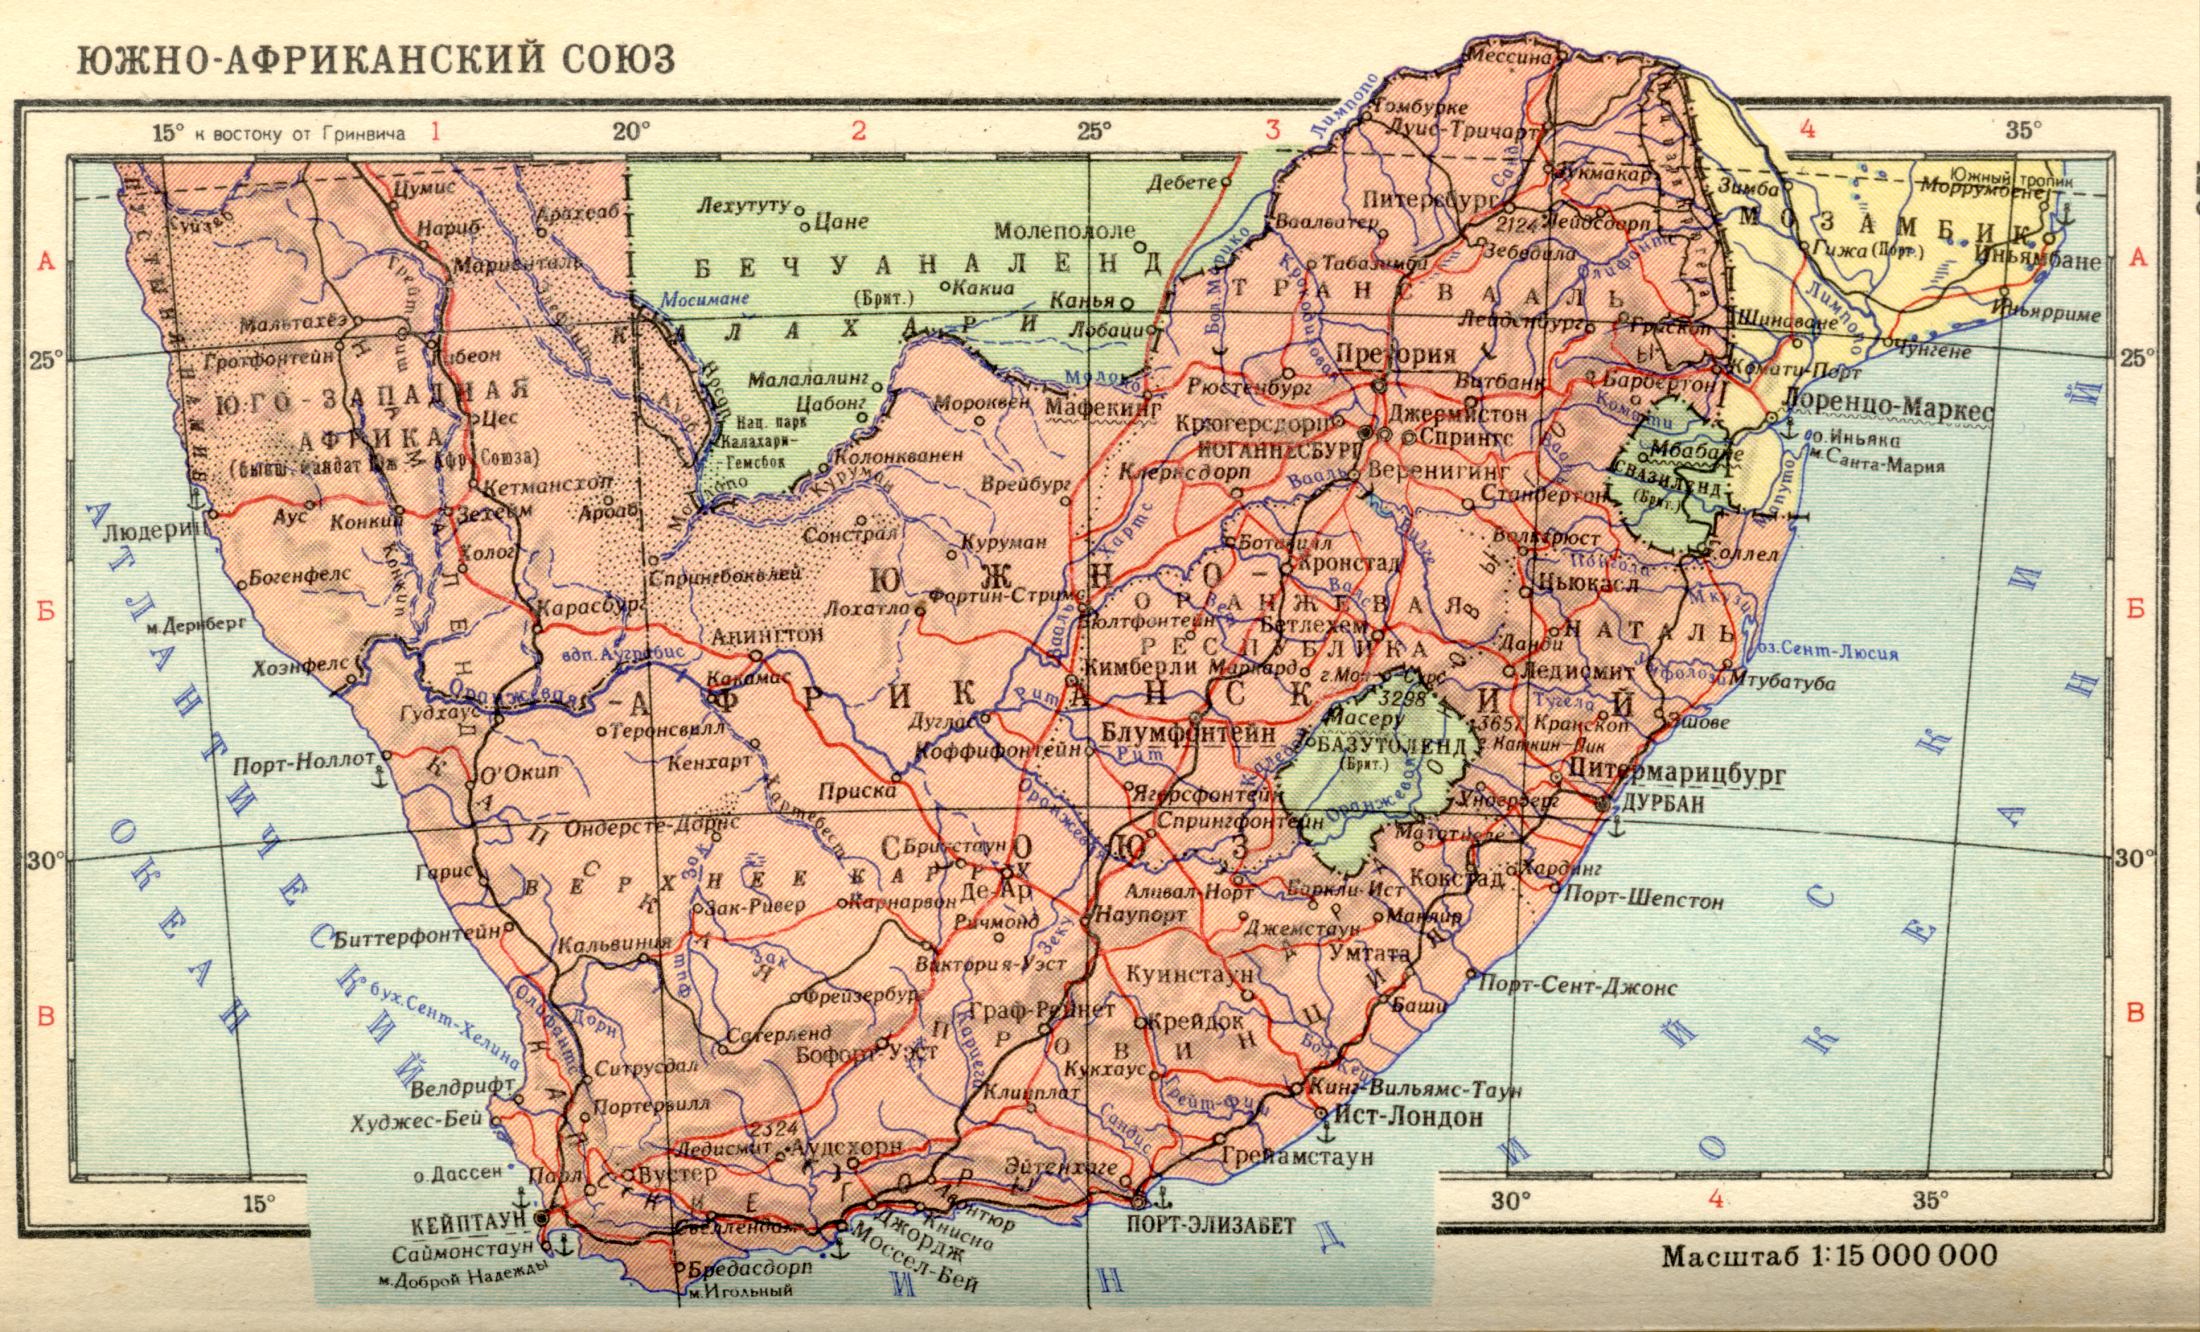 1956. La carte politique du monde. Union sud-africaine en 1956. Télécharger une carte détaillée